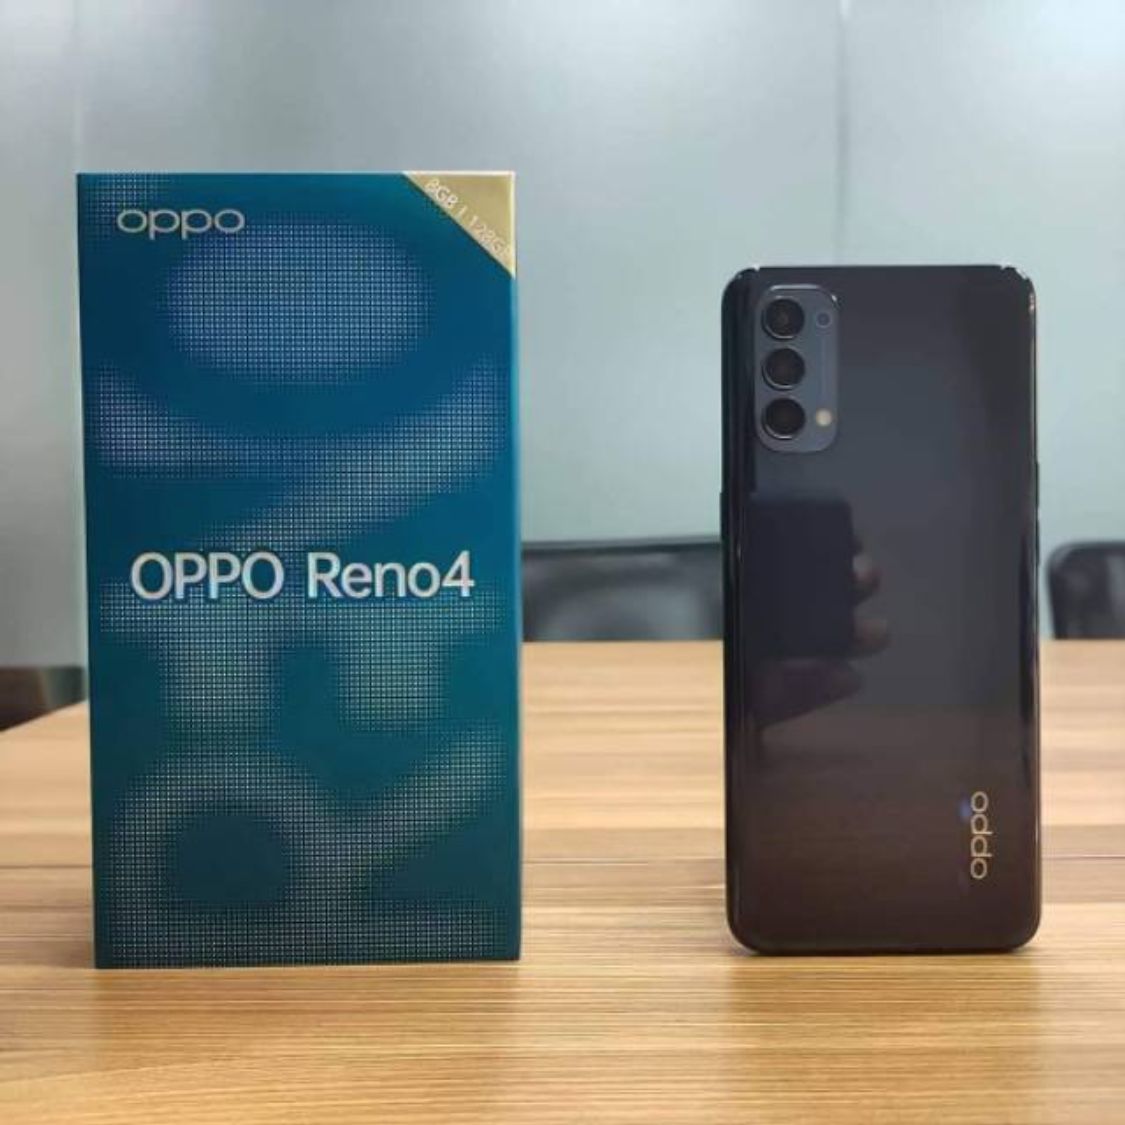 Daftar Harga HP OPPO 24 September 2020   : Oppo Reno 4, Find X2 Pro, Oppo